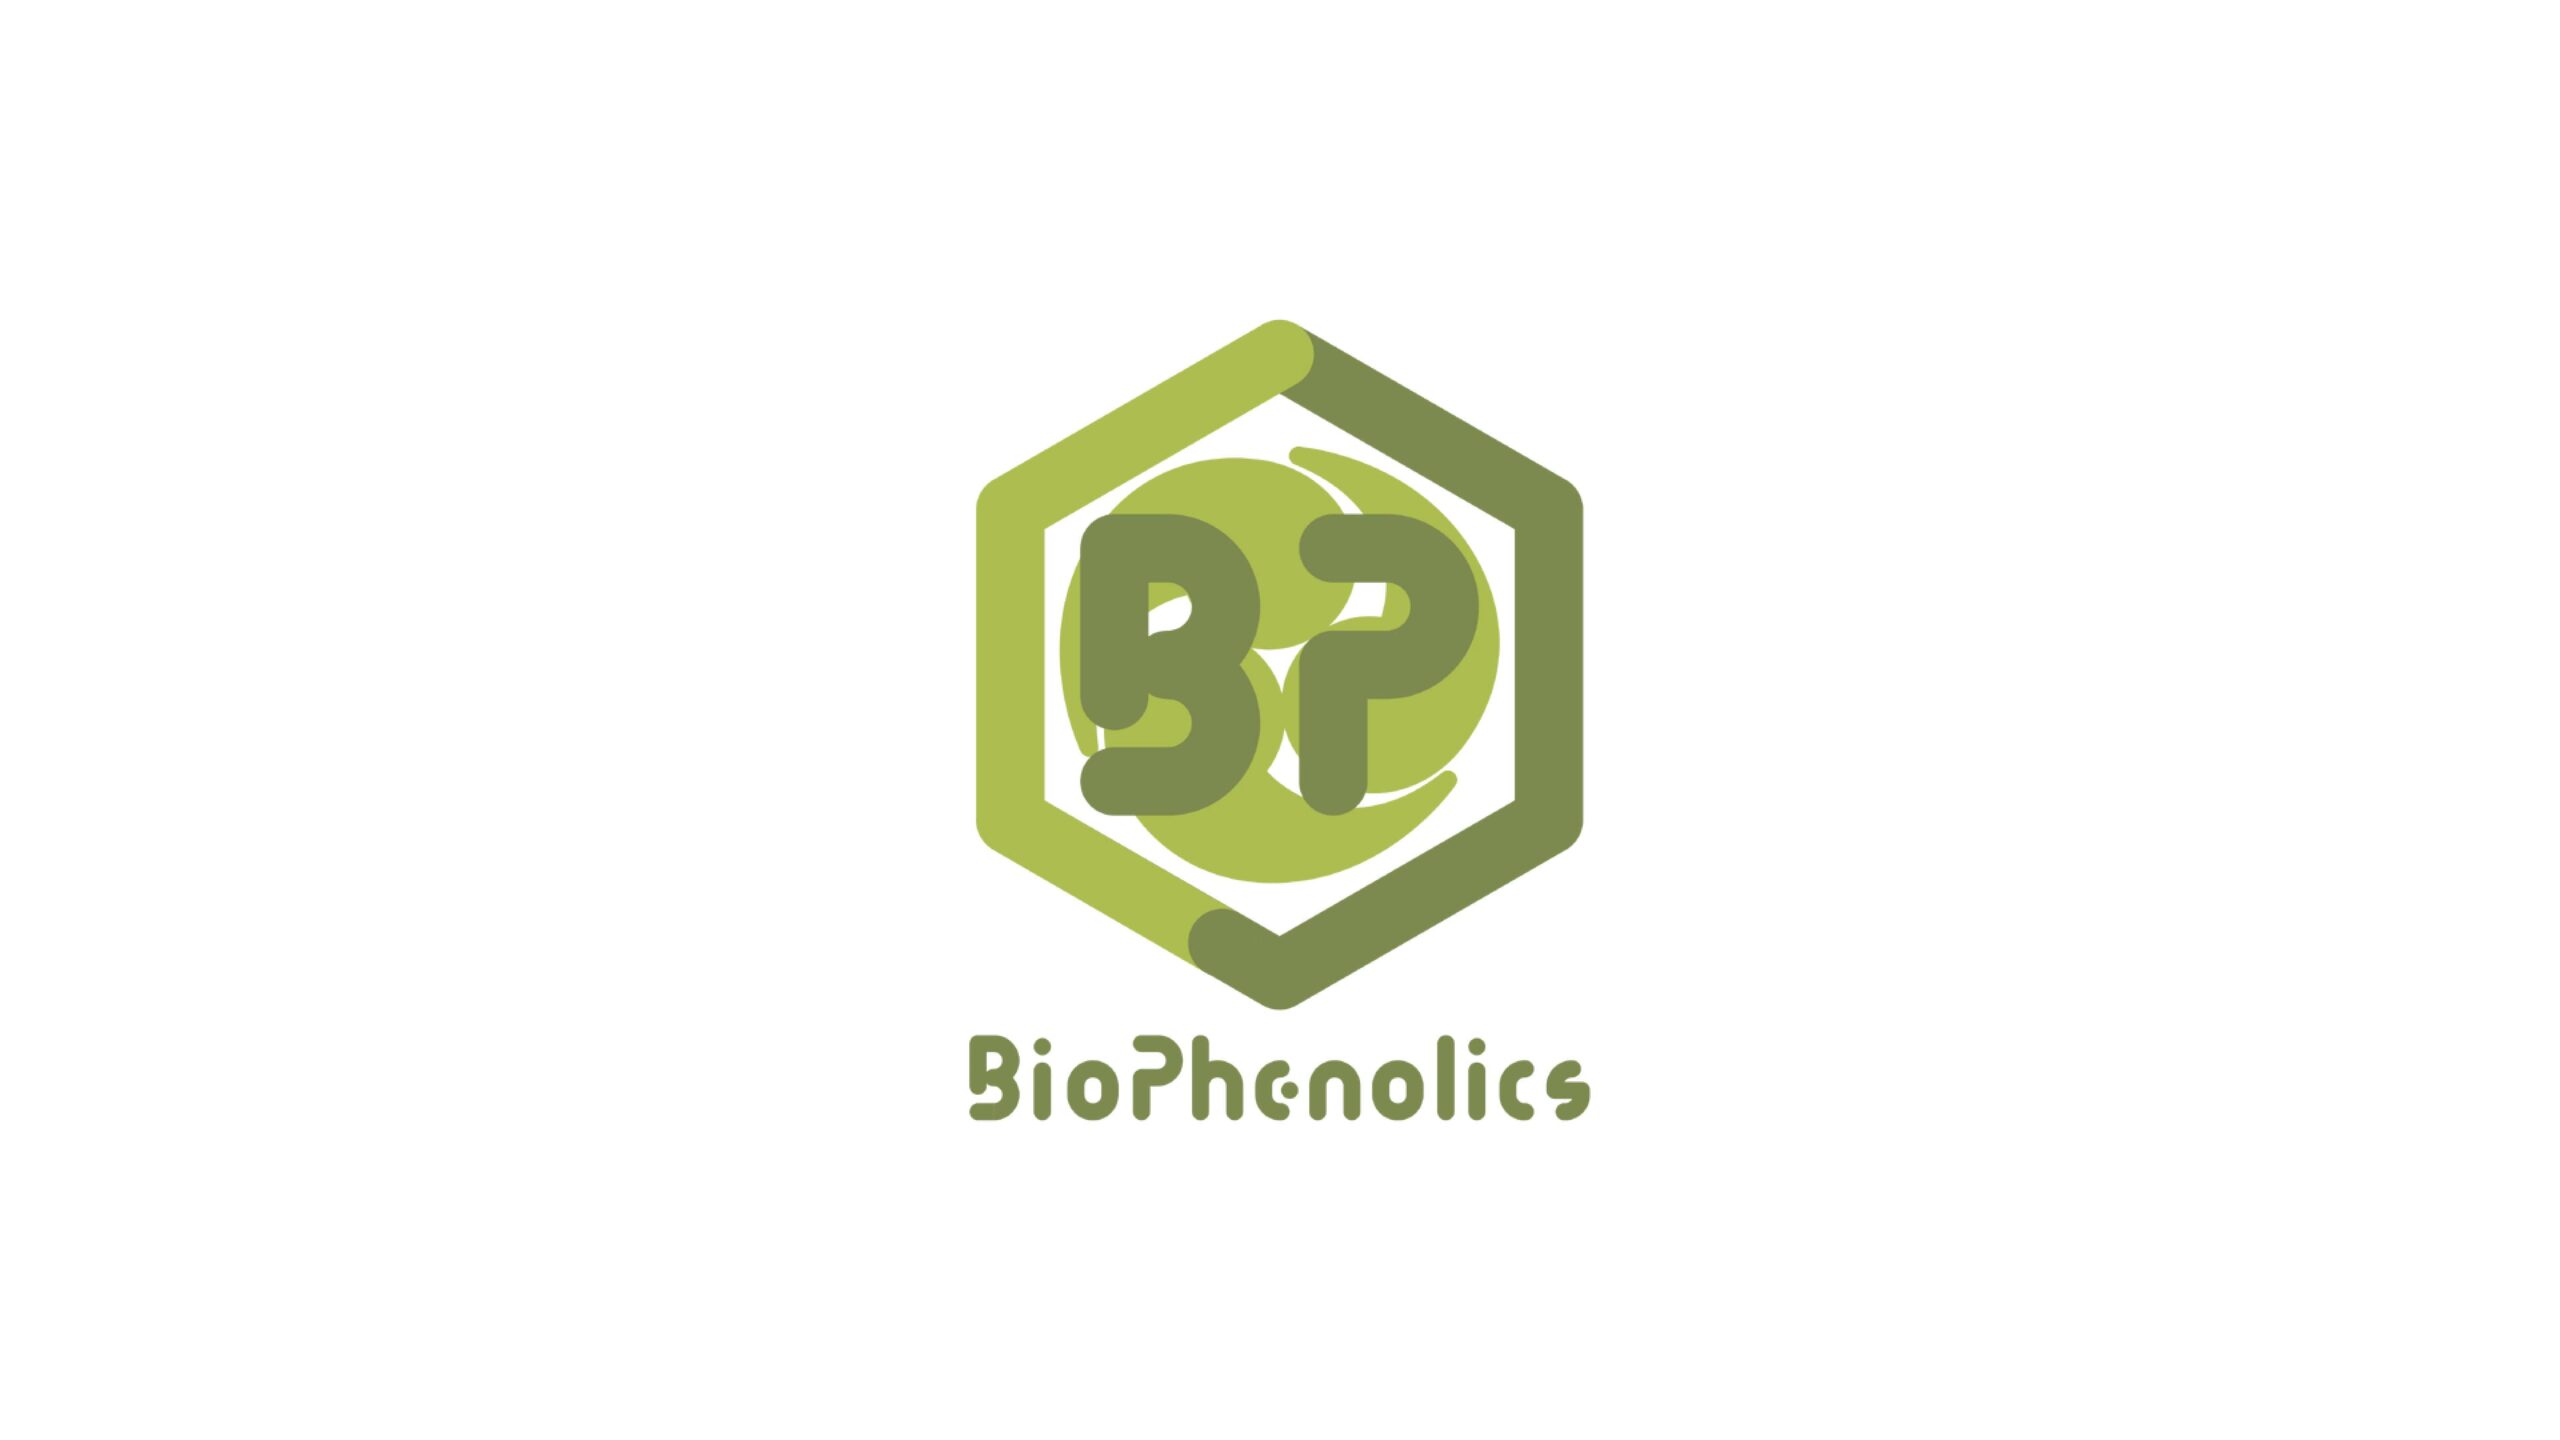 非可食バイオマスを原料にして化学品を大量生産し、循環型社会の実現を目指すBioPhenolics株式会社が3,000万円の資金調達を実施